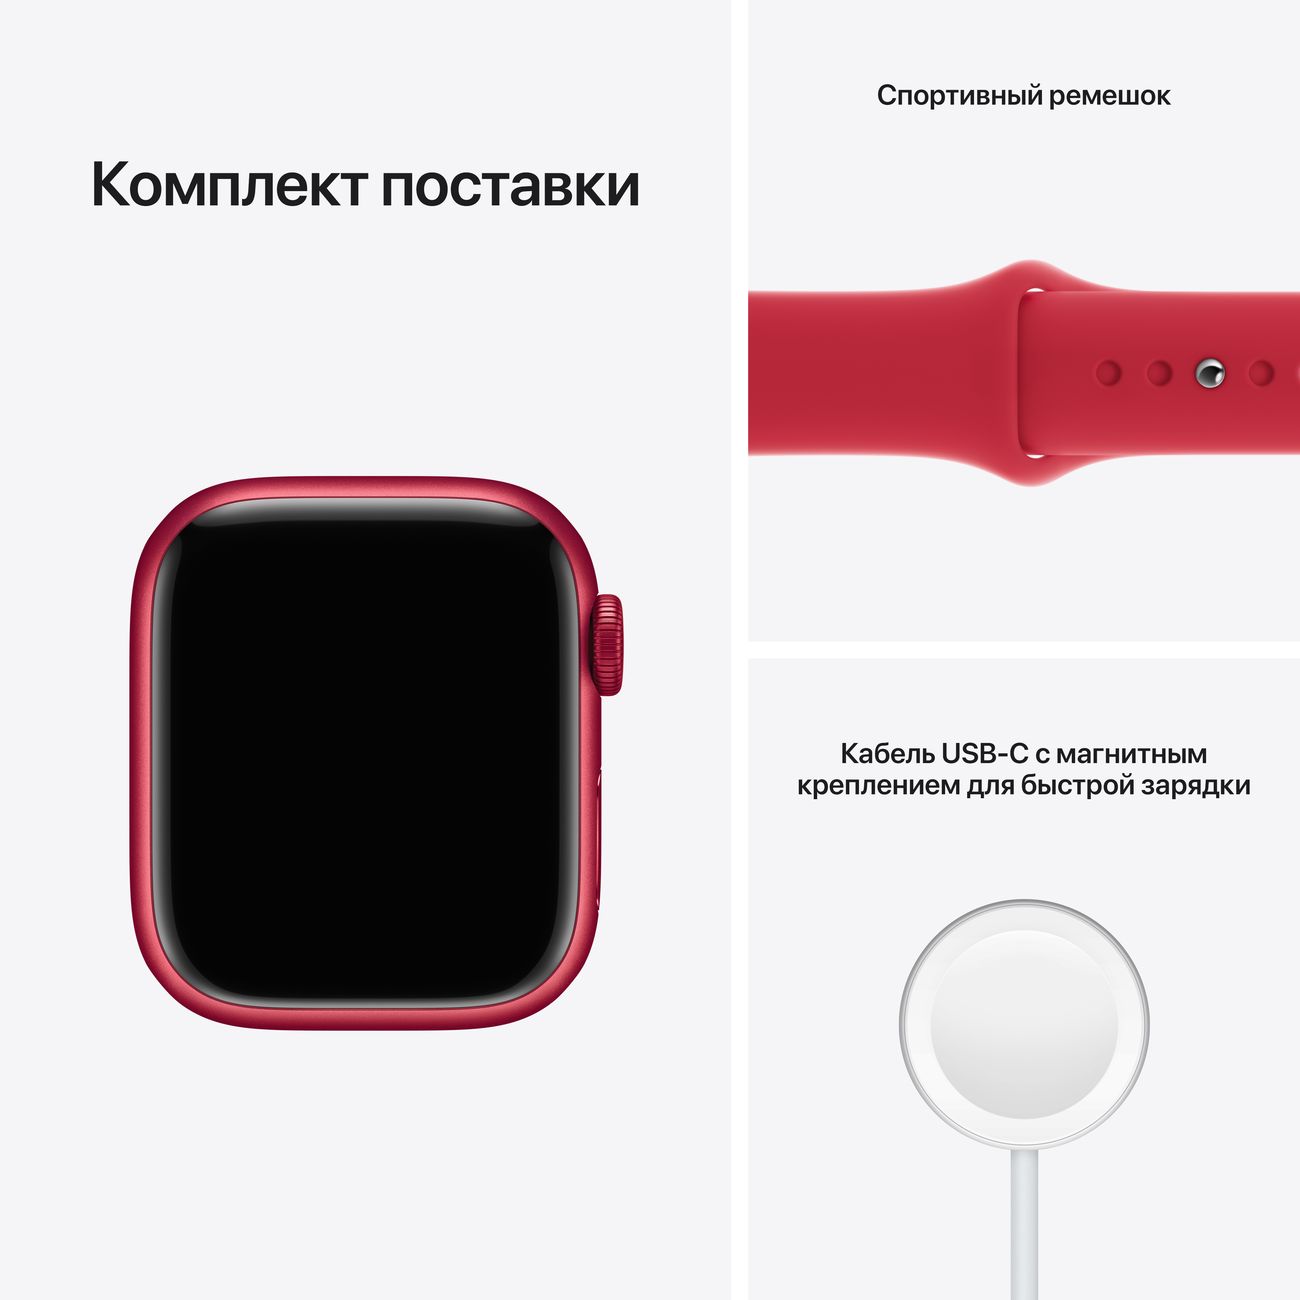 Apple Watch Series 7, 45 мм, корпус из алюминия красного цвета, спортивный ремешок (PRODUCT)RED